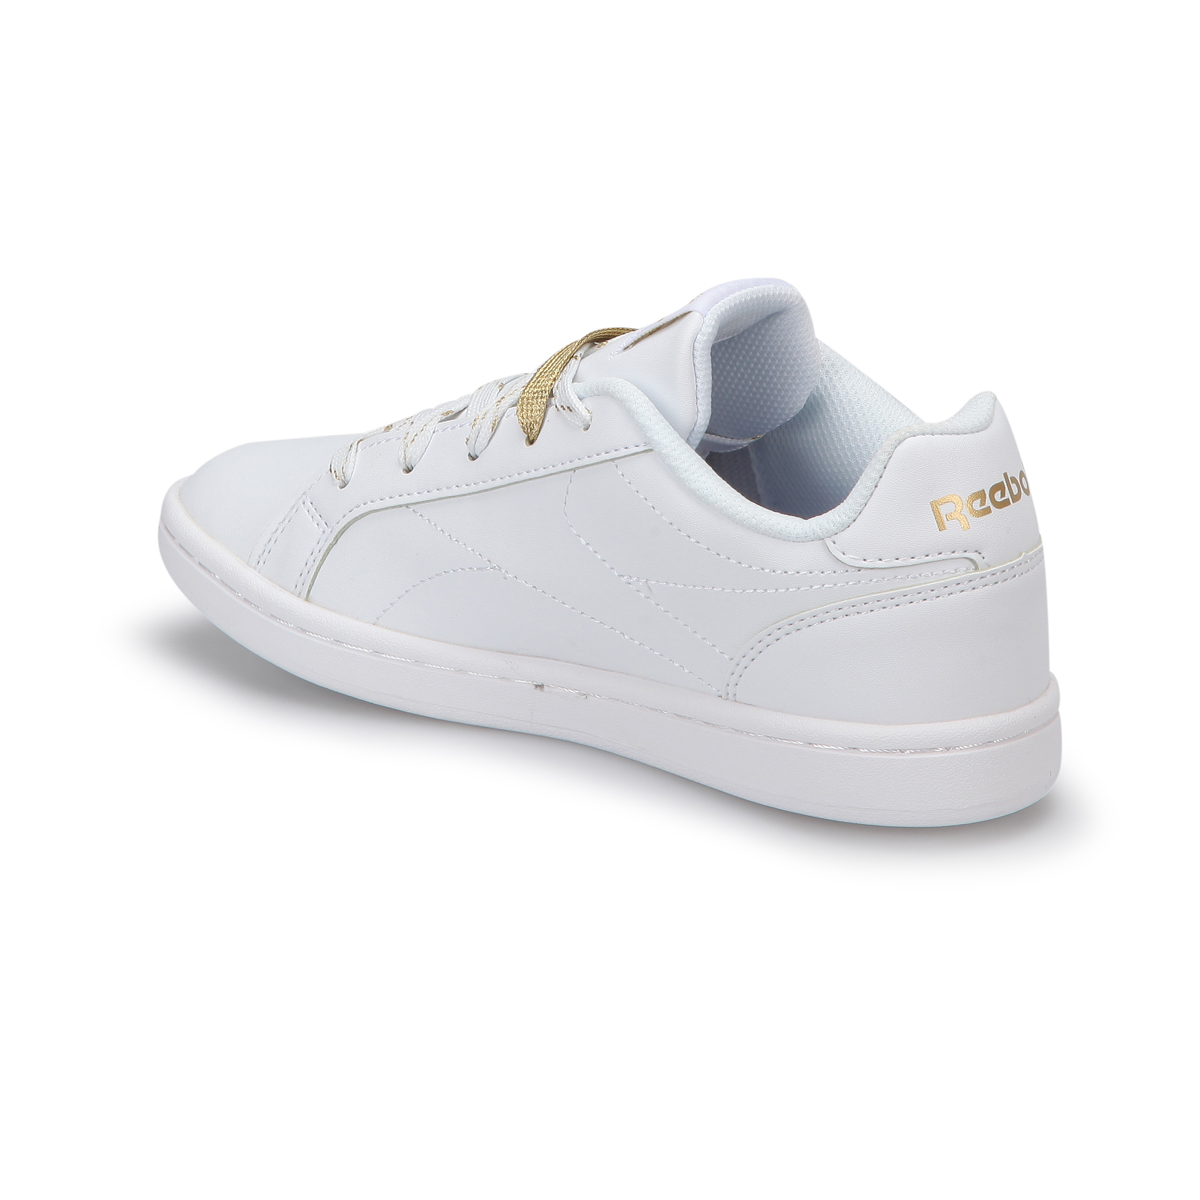 Reebok BS8482 Beyaz Unisex Çocuk Sneaker Ayakkabı 100302760 |